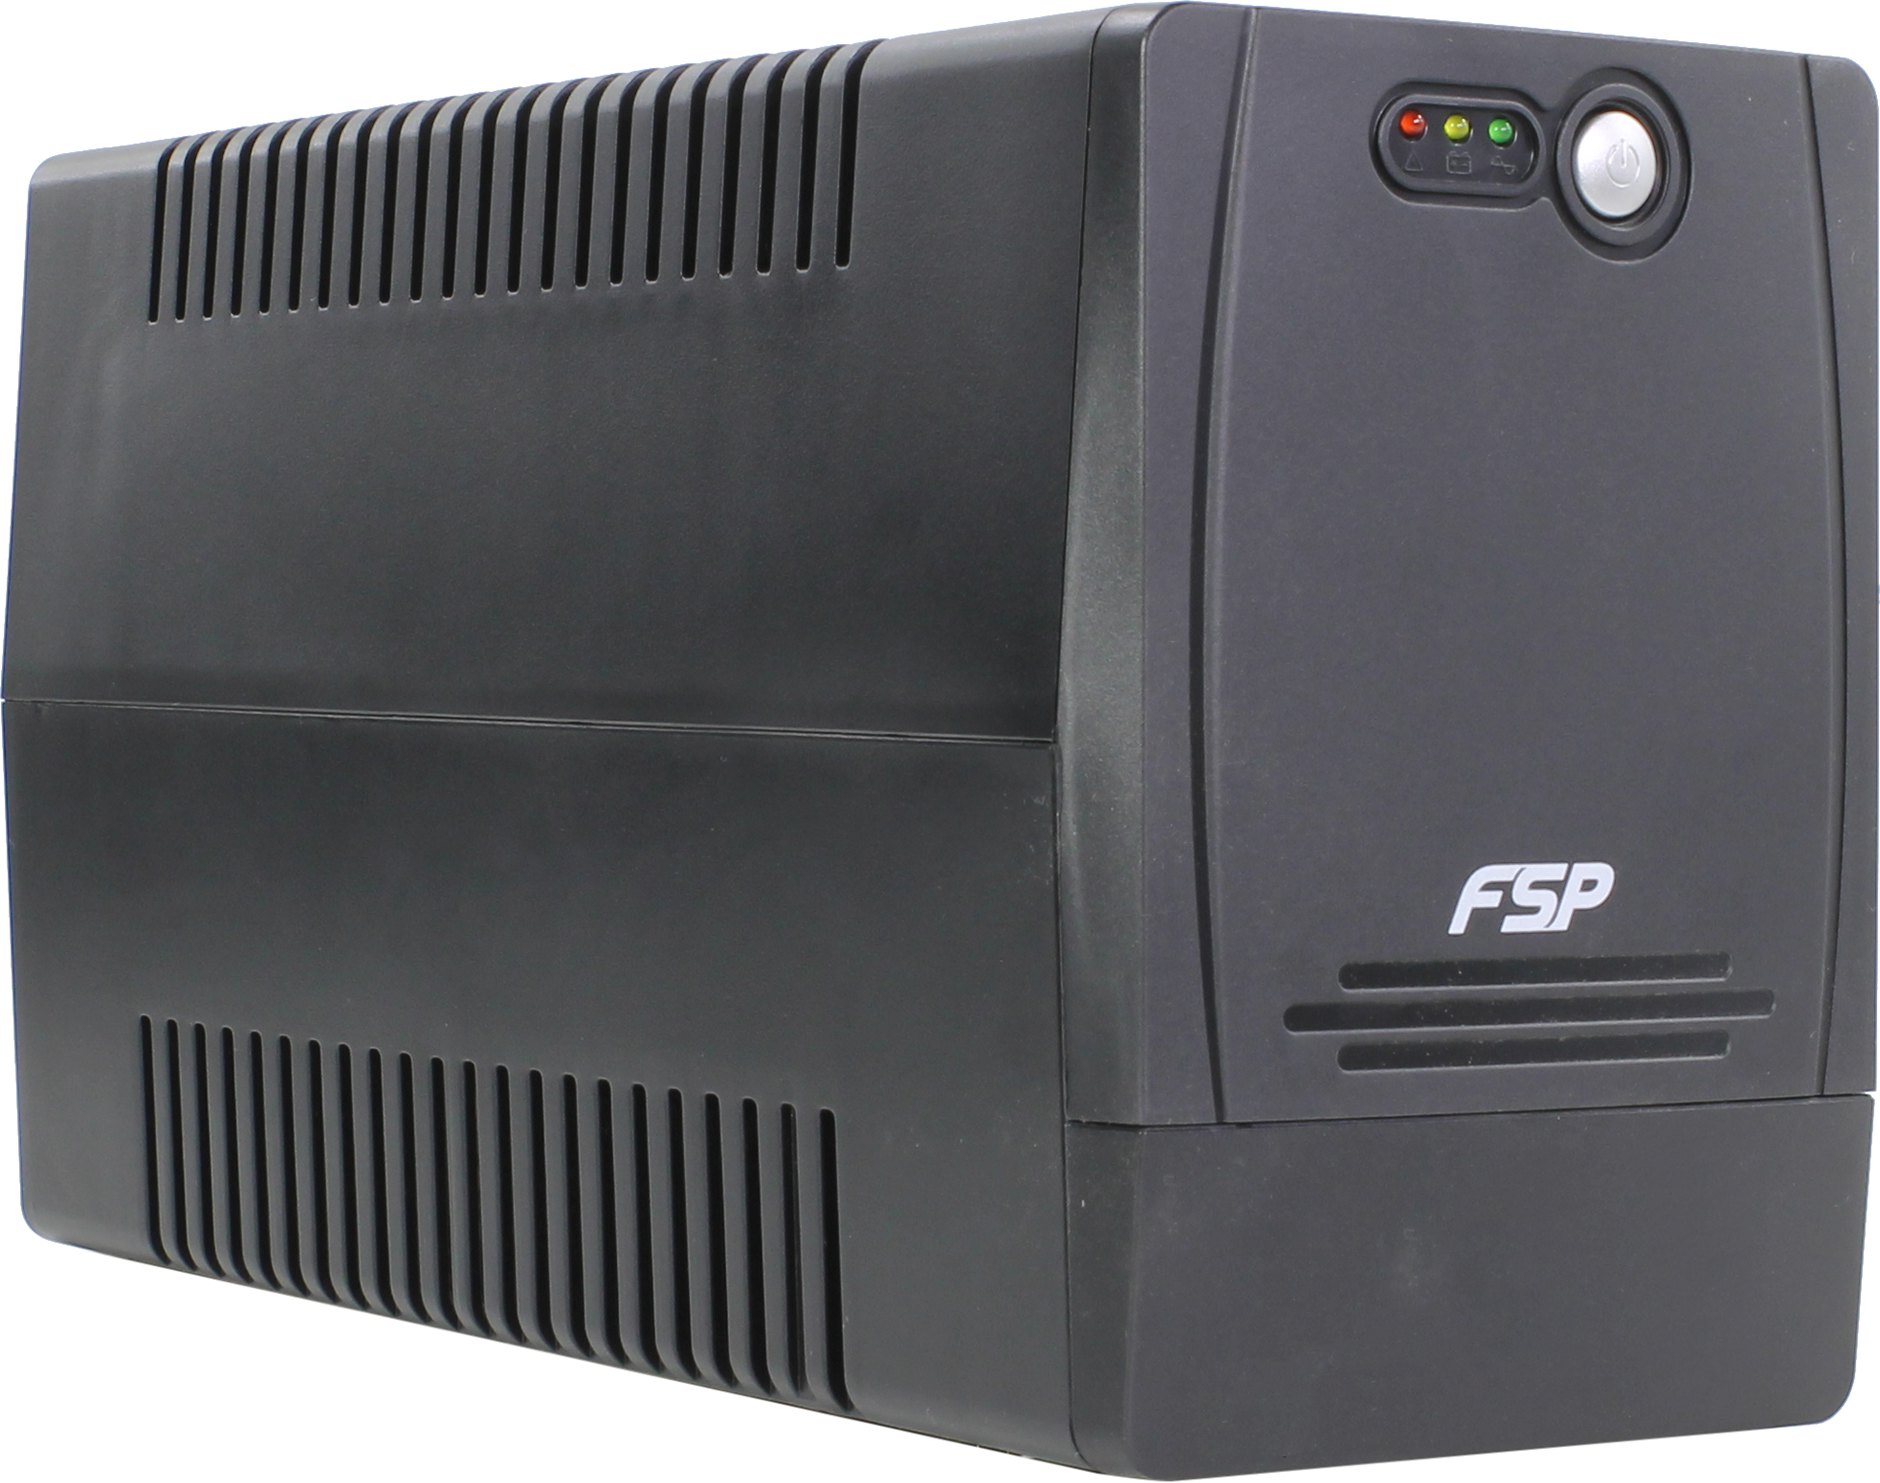 Источник бесперебойного питания FSP FP 850 800VA SMART T480W PPF4801102